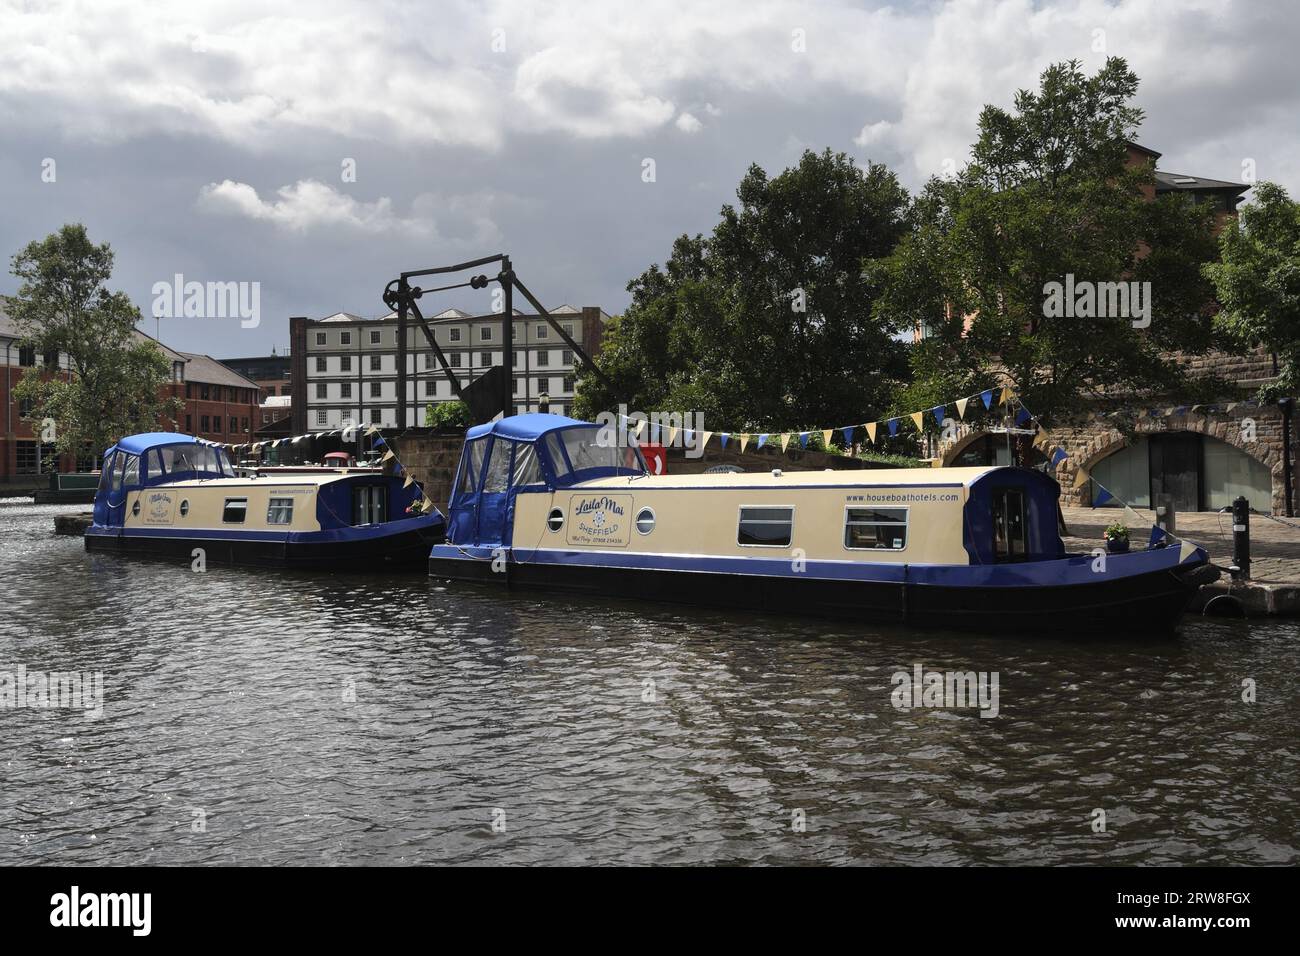 Kanalboote, die in Victoria Quays, Sheffield Canal Basin England, ankerten, nutzten ein schwimmendes Hotel, das in britischen Wasserstraßen, Hausbooten, Hotelferien betrieben wurde Stockfoto